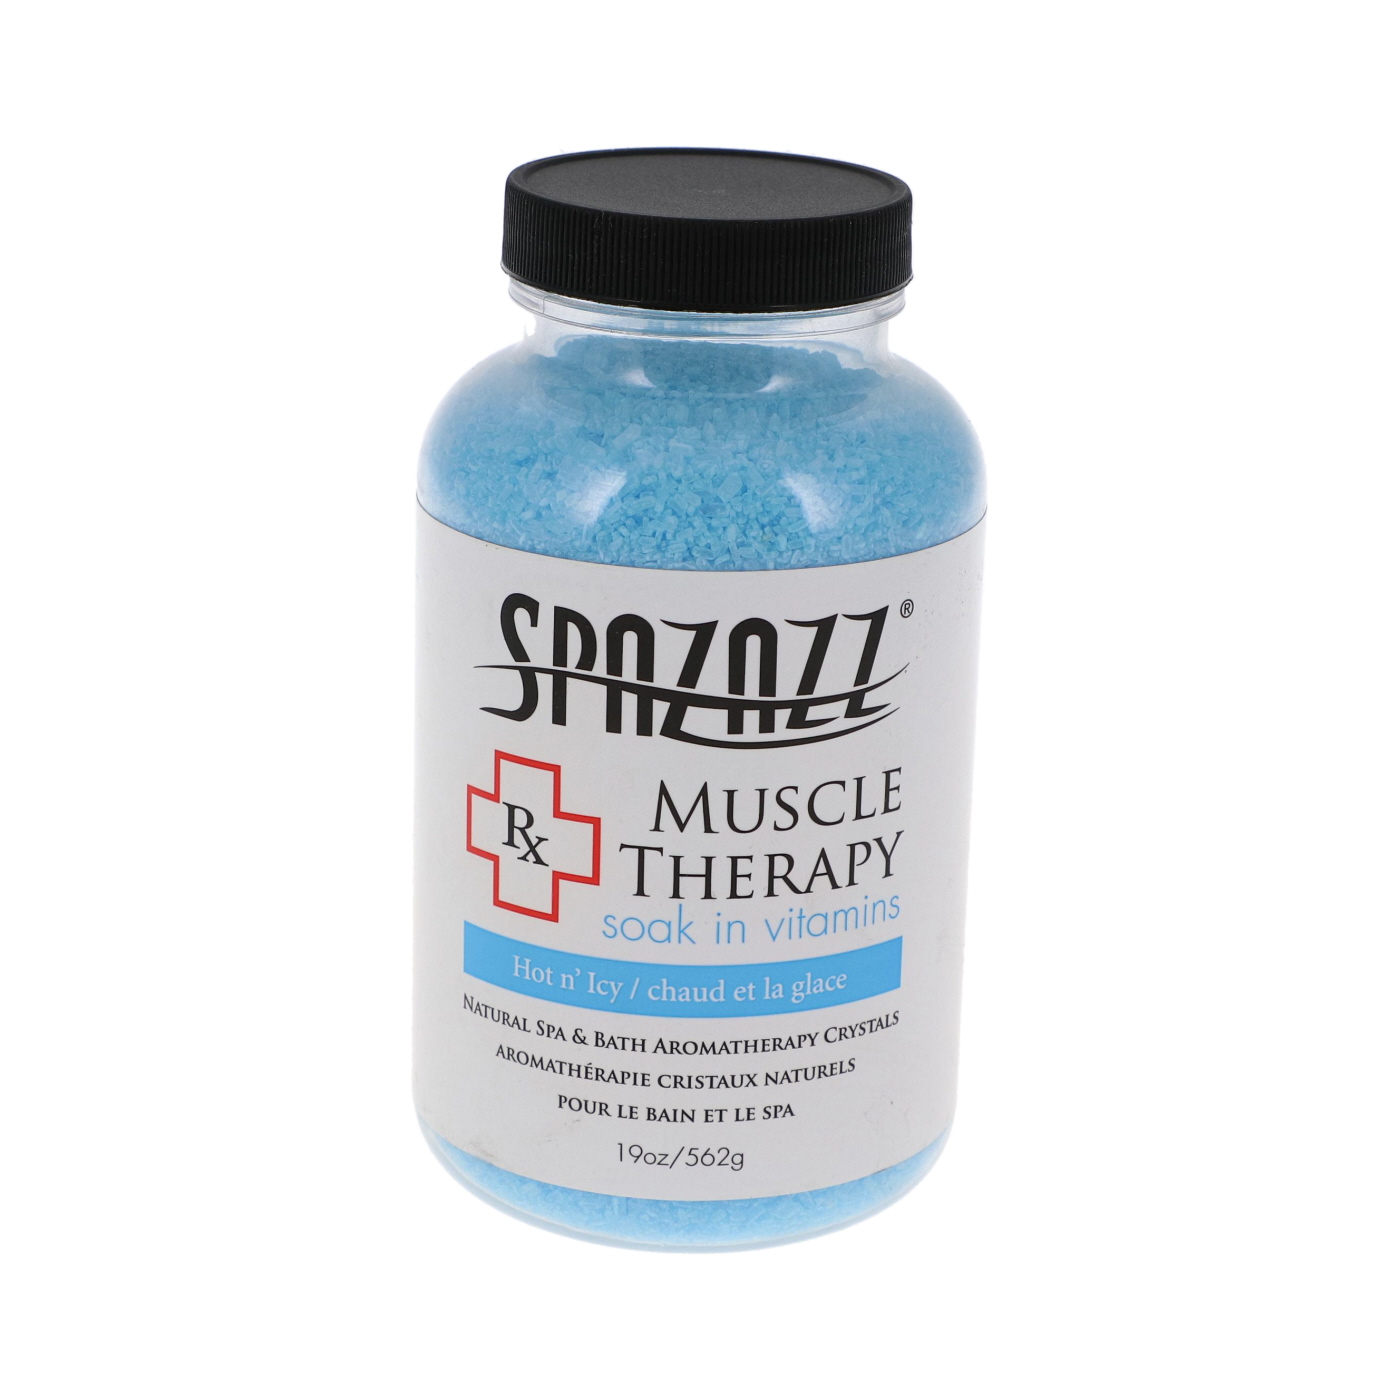 Sels d'aromathérapie thérapeutiques - 562g - Spazazz